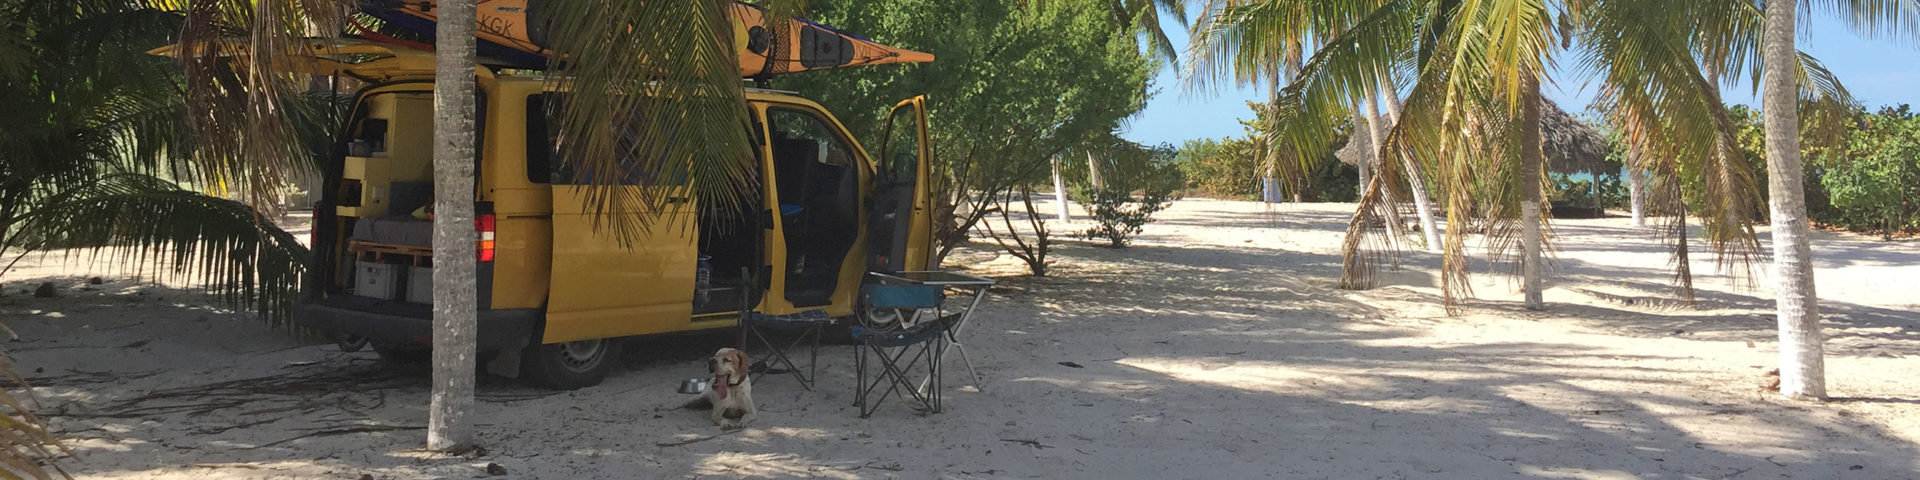 Im Vw-Bus durch Mexiko mit Kajak und Hund